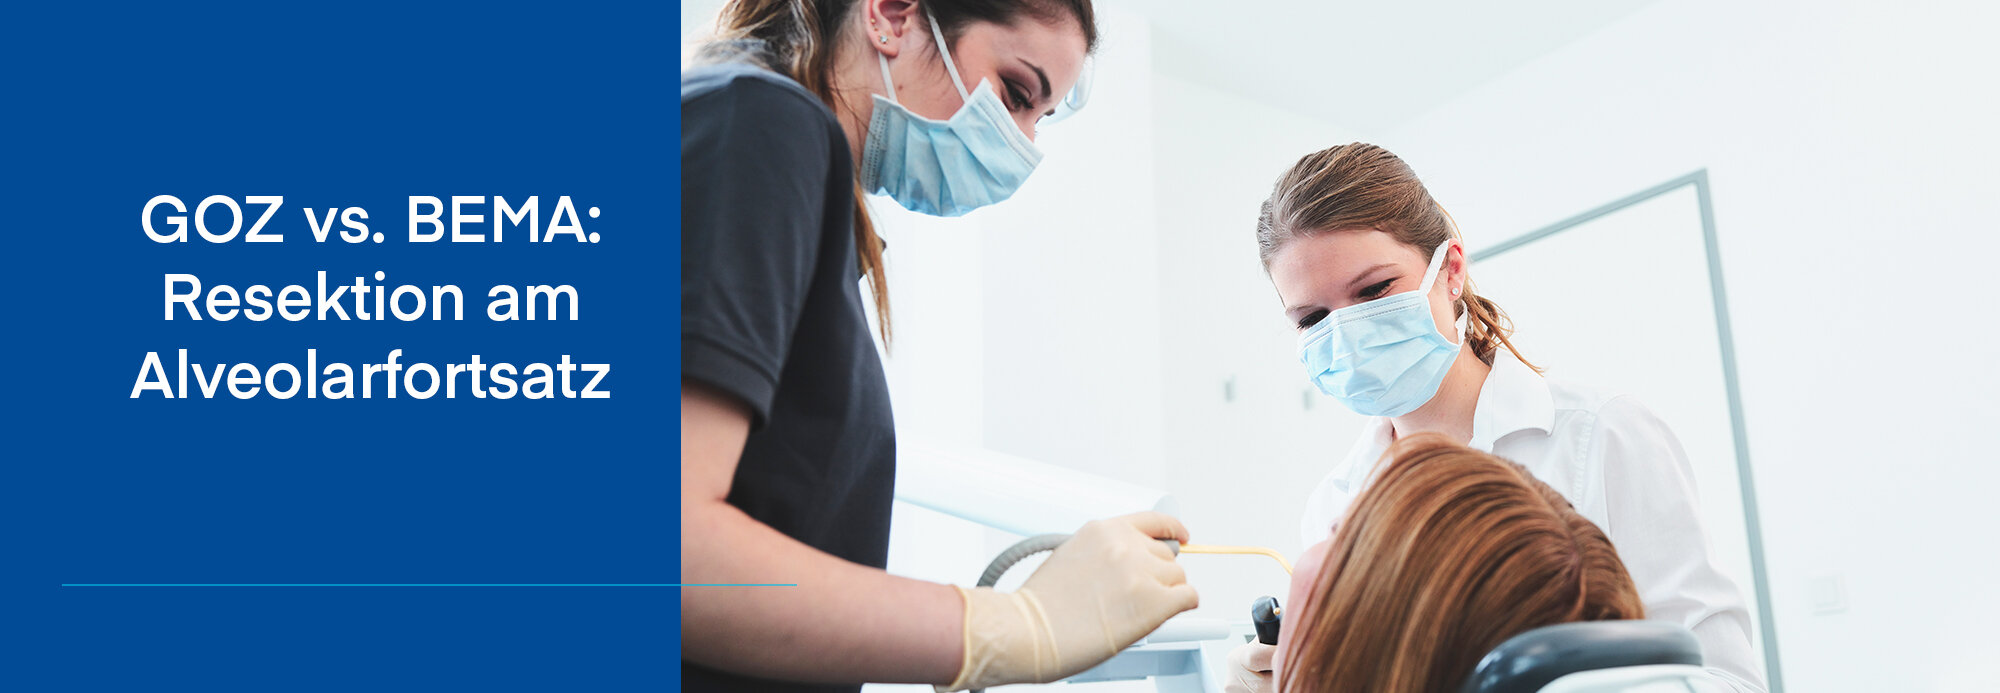 Bild beim Zahnarzt, bei der Zahnreinigung mit zwei Zahnarzthelferinnen, auf der linken Seite sieht man eine Aufschrift mit GOZ vs. BEMA: Resektion am Alveolarfortsatz